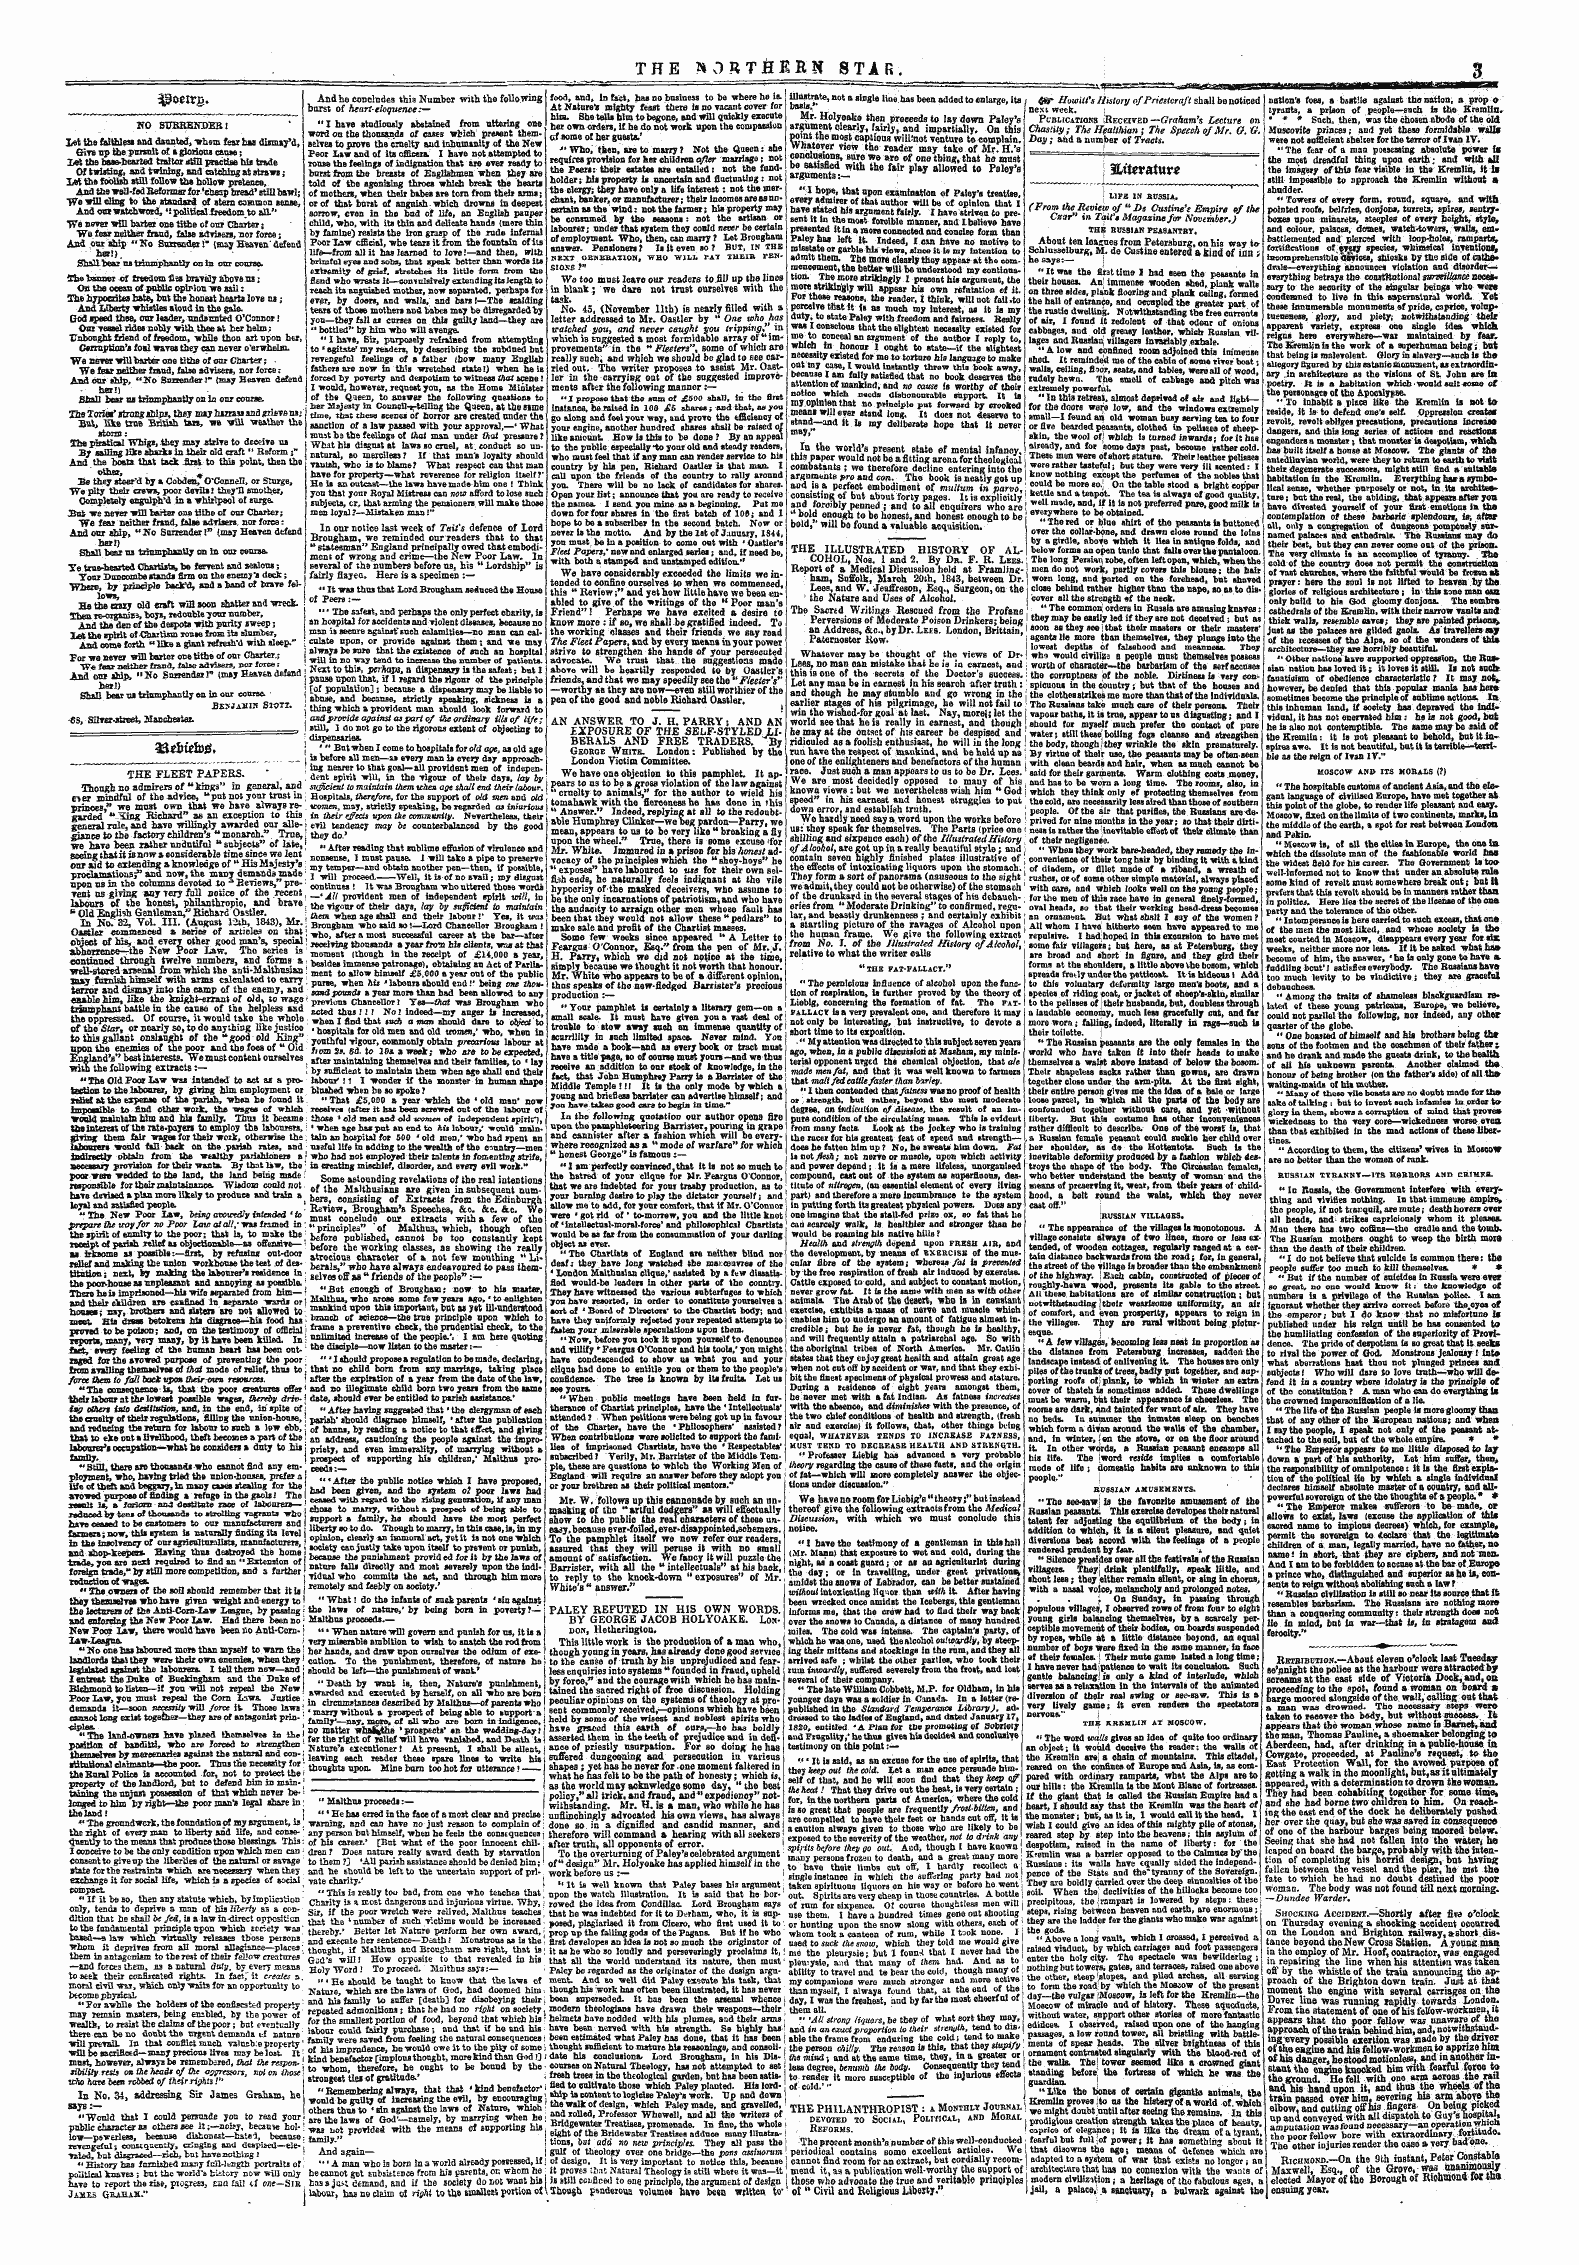 Northern Star (1837-1852): jS F Y, 3rd edition - 3poeir£.